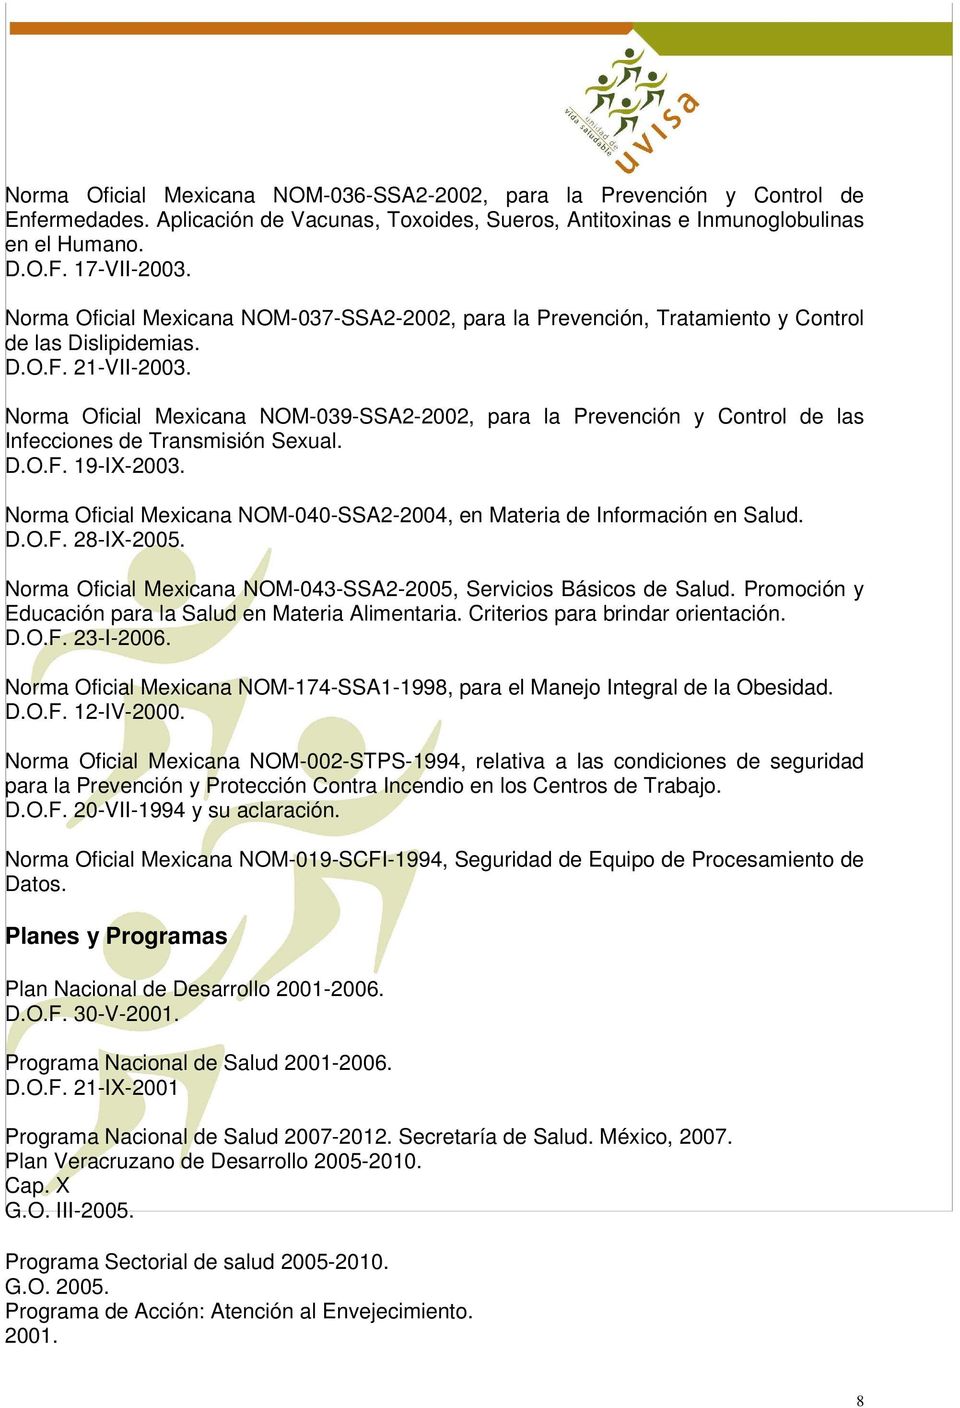 Norma Oficial Mexicana NOM-039-SSA2-2002, para la Prevención y Control de las Infecciones de Transmisión Sexual. D.O.F. 19-IX-2003.